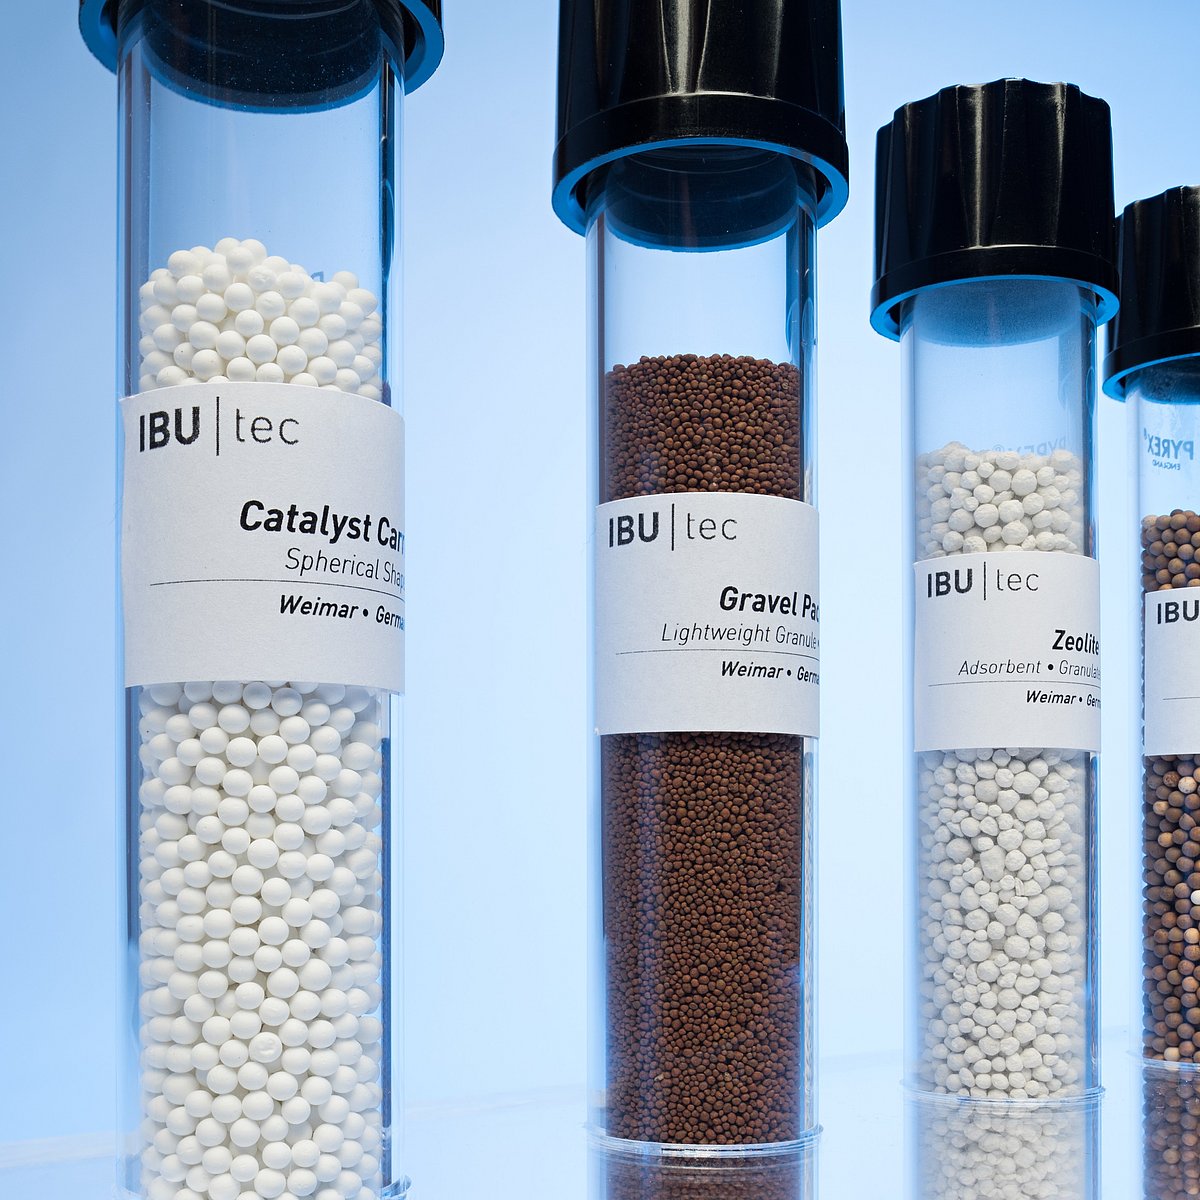 IBU-tec material samples in test tubes: carbon fibers, proppants and more